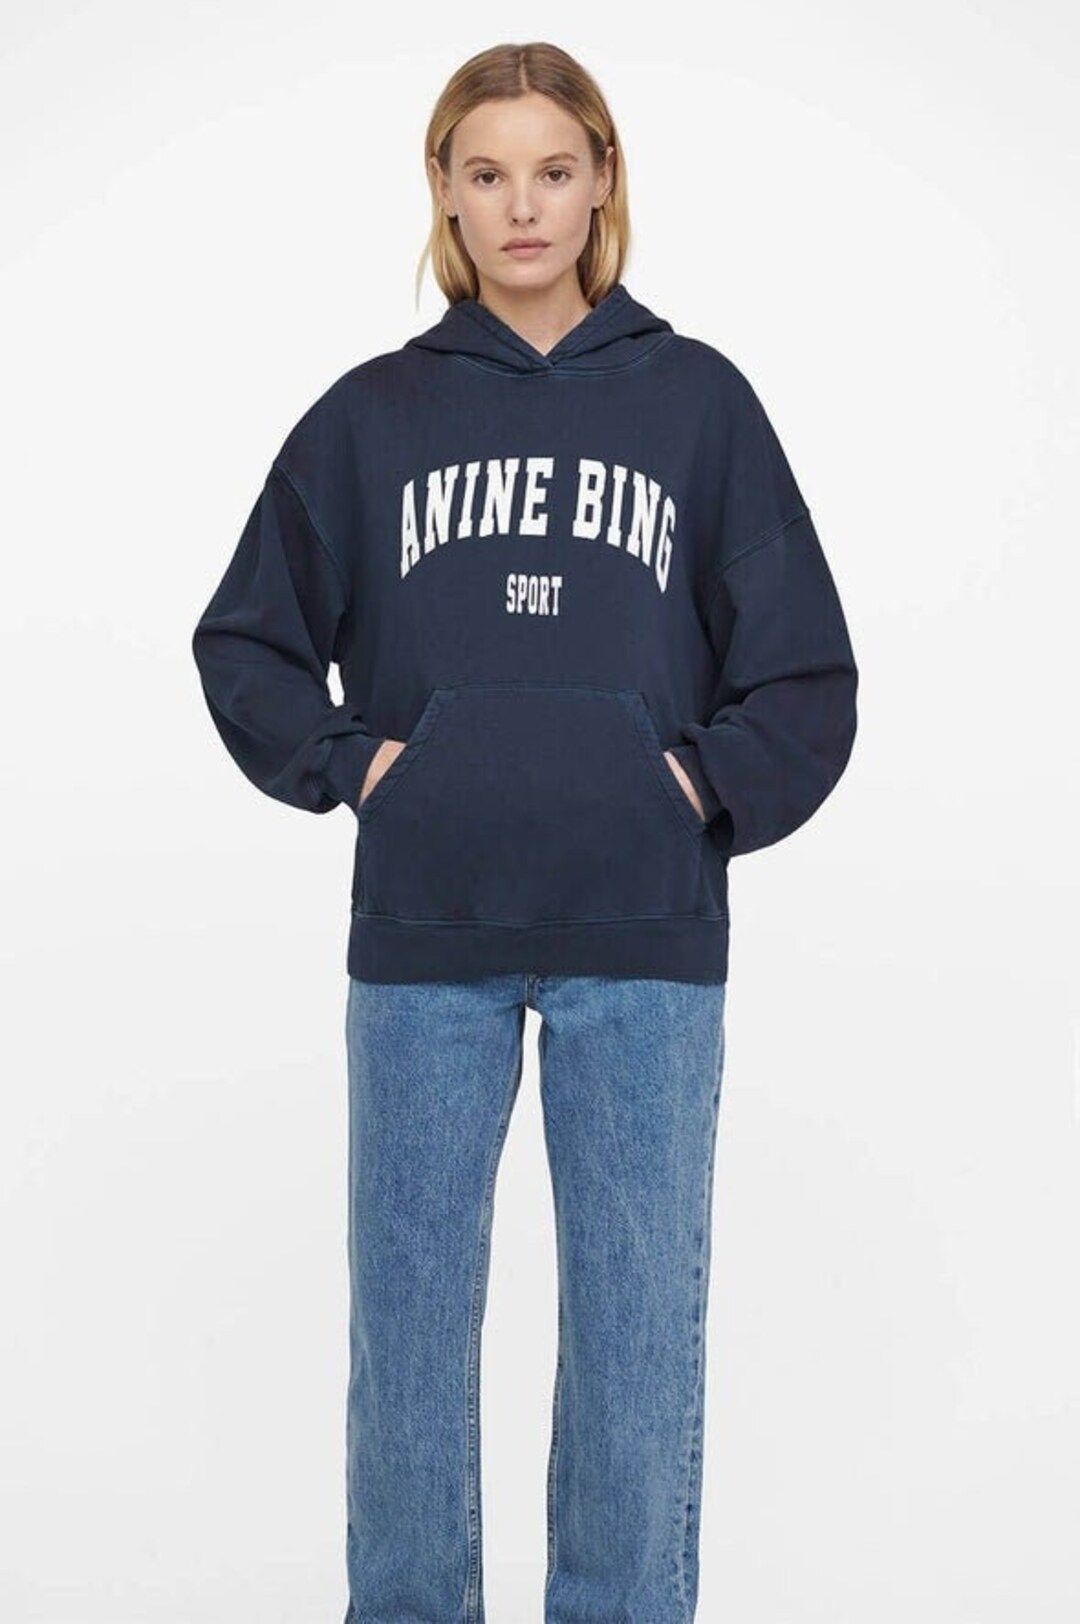 Anine Bing Sport Vintage Sweatshirt Hoodie, Givenchy hoodie, Harley University Sweater, female ho... | Etsy (US)